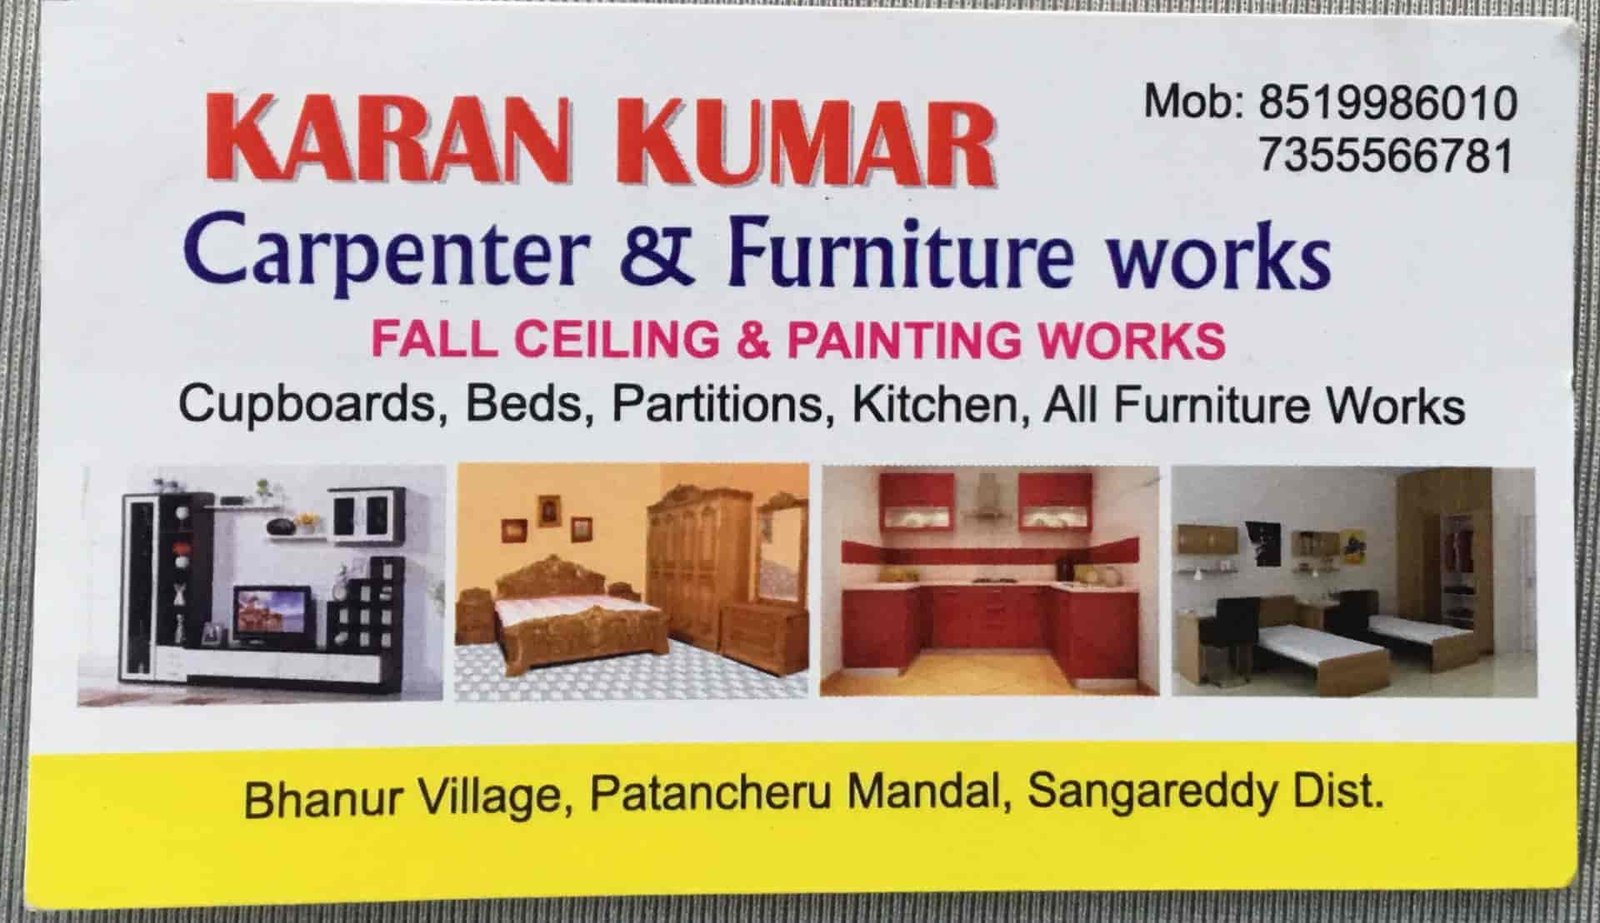 Karan Kumar arpenter & Furniture Works